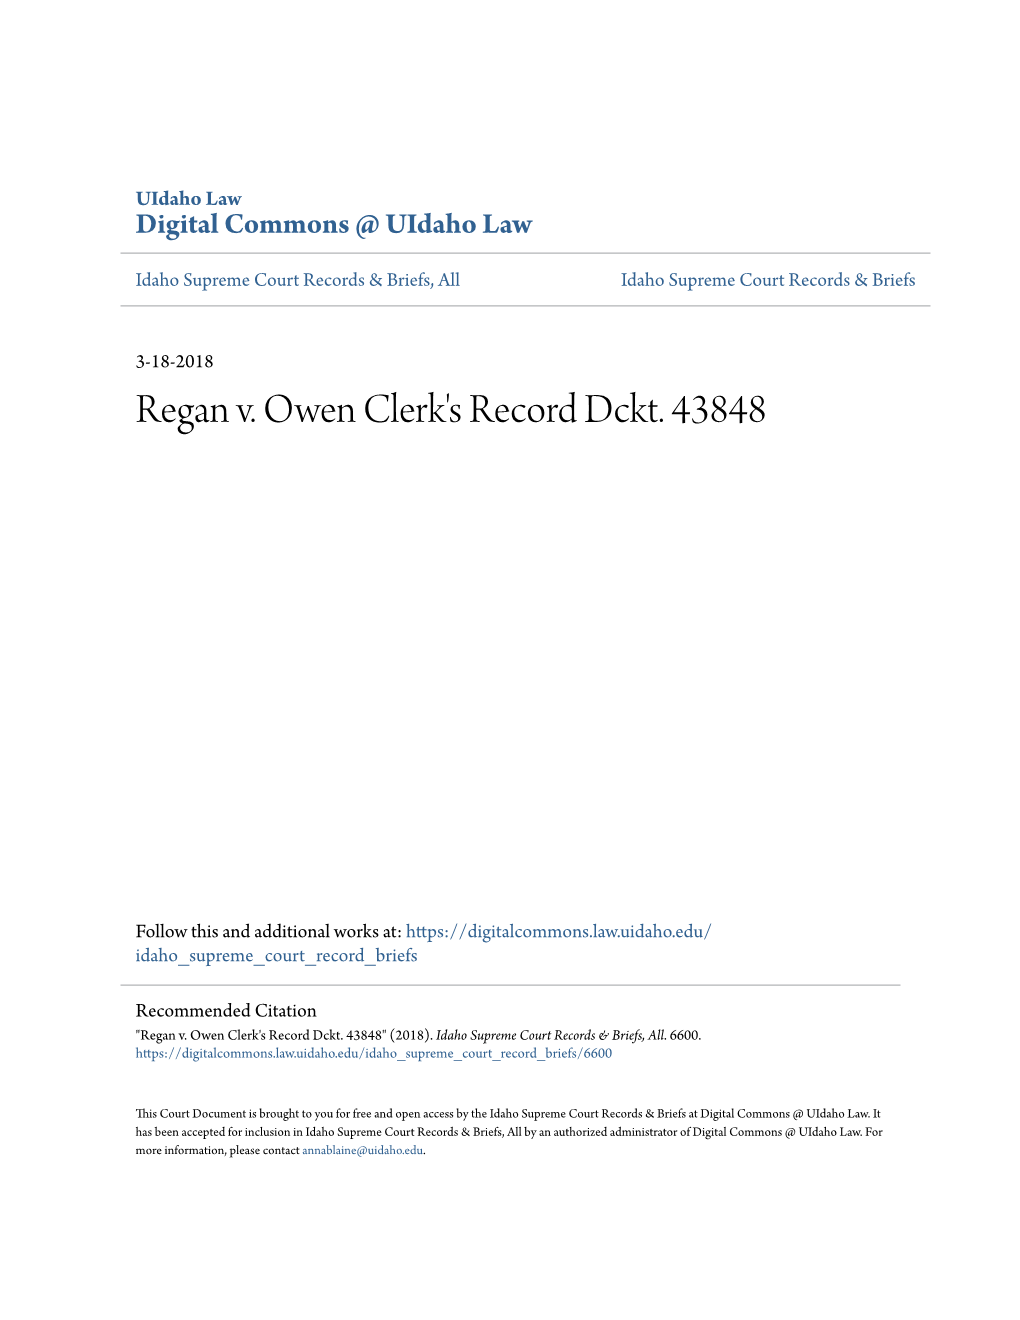 Regan V. Owen Clerk's Record Dckt. 43848